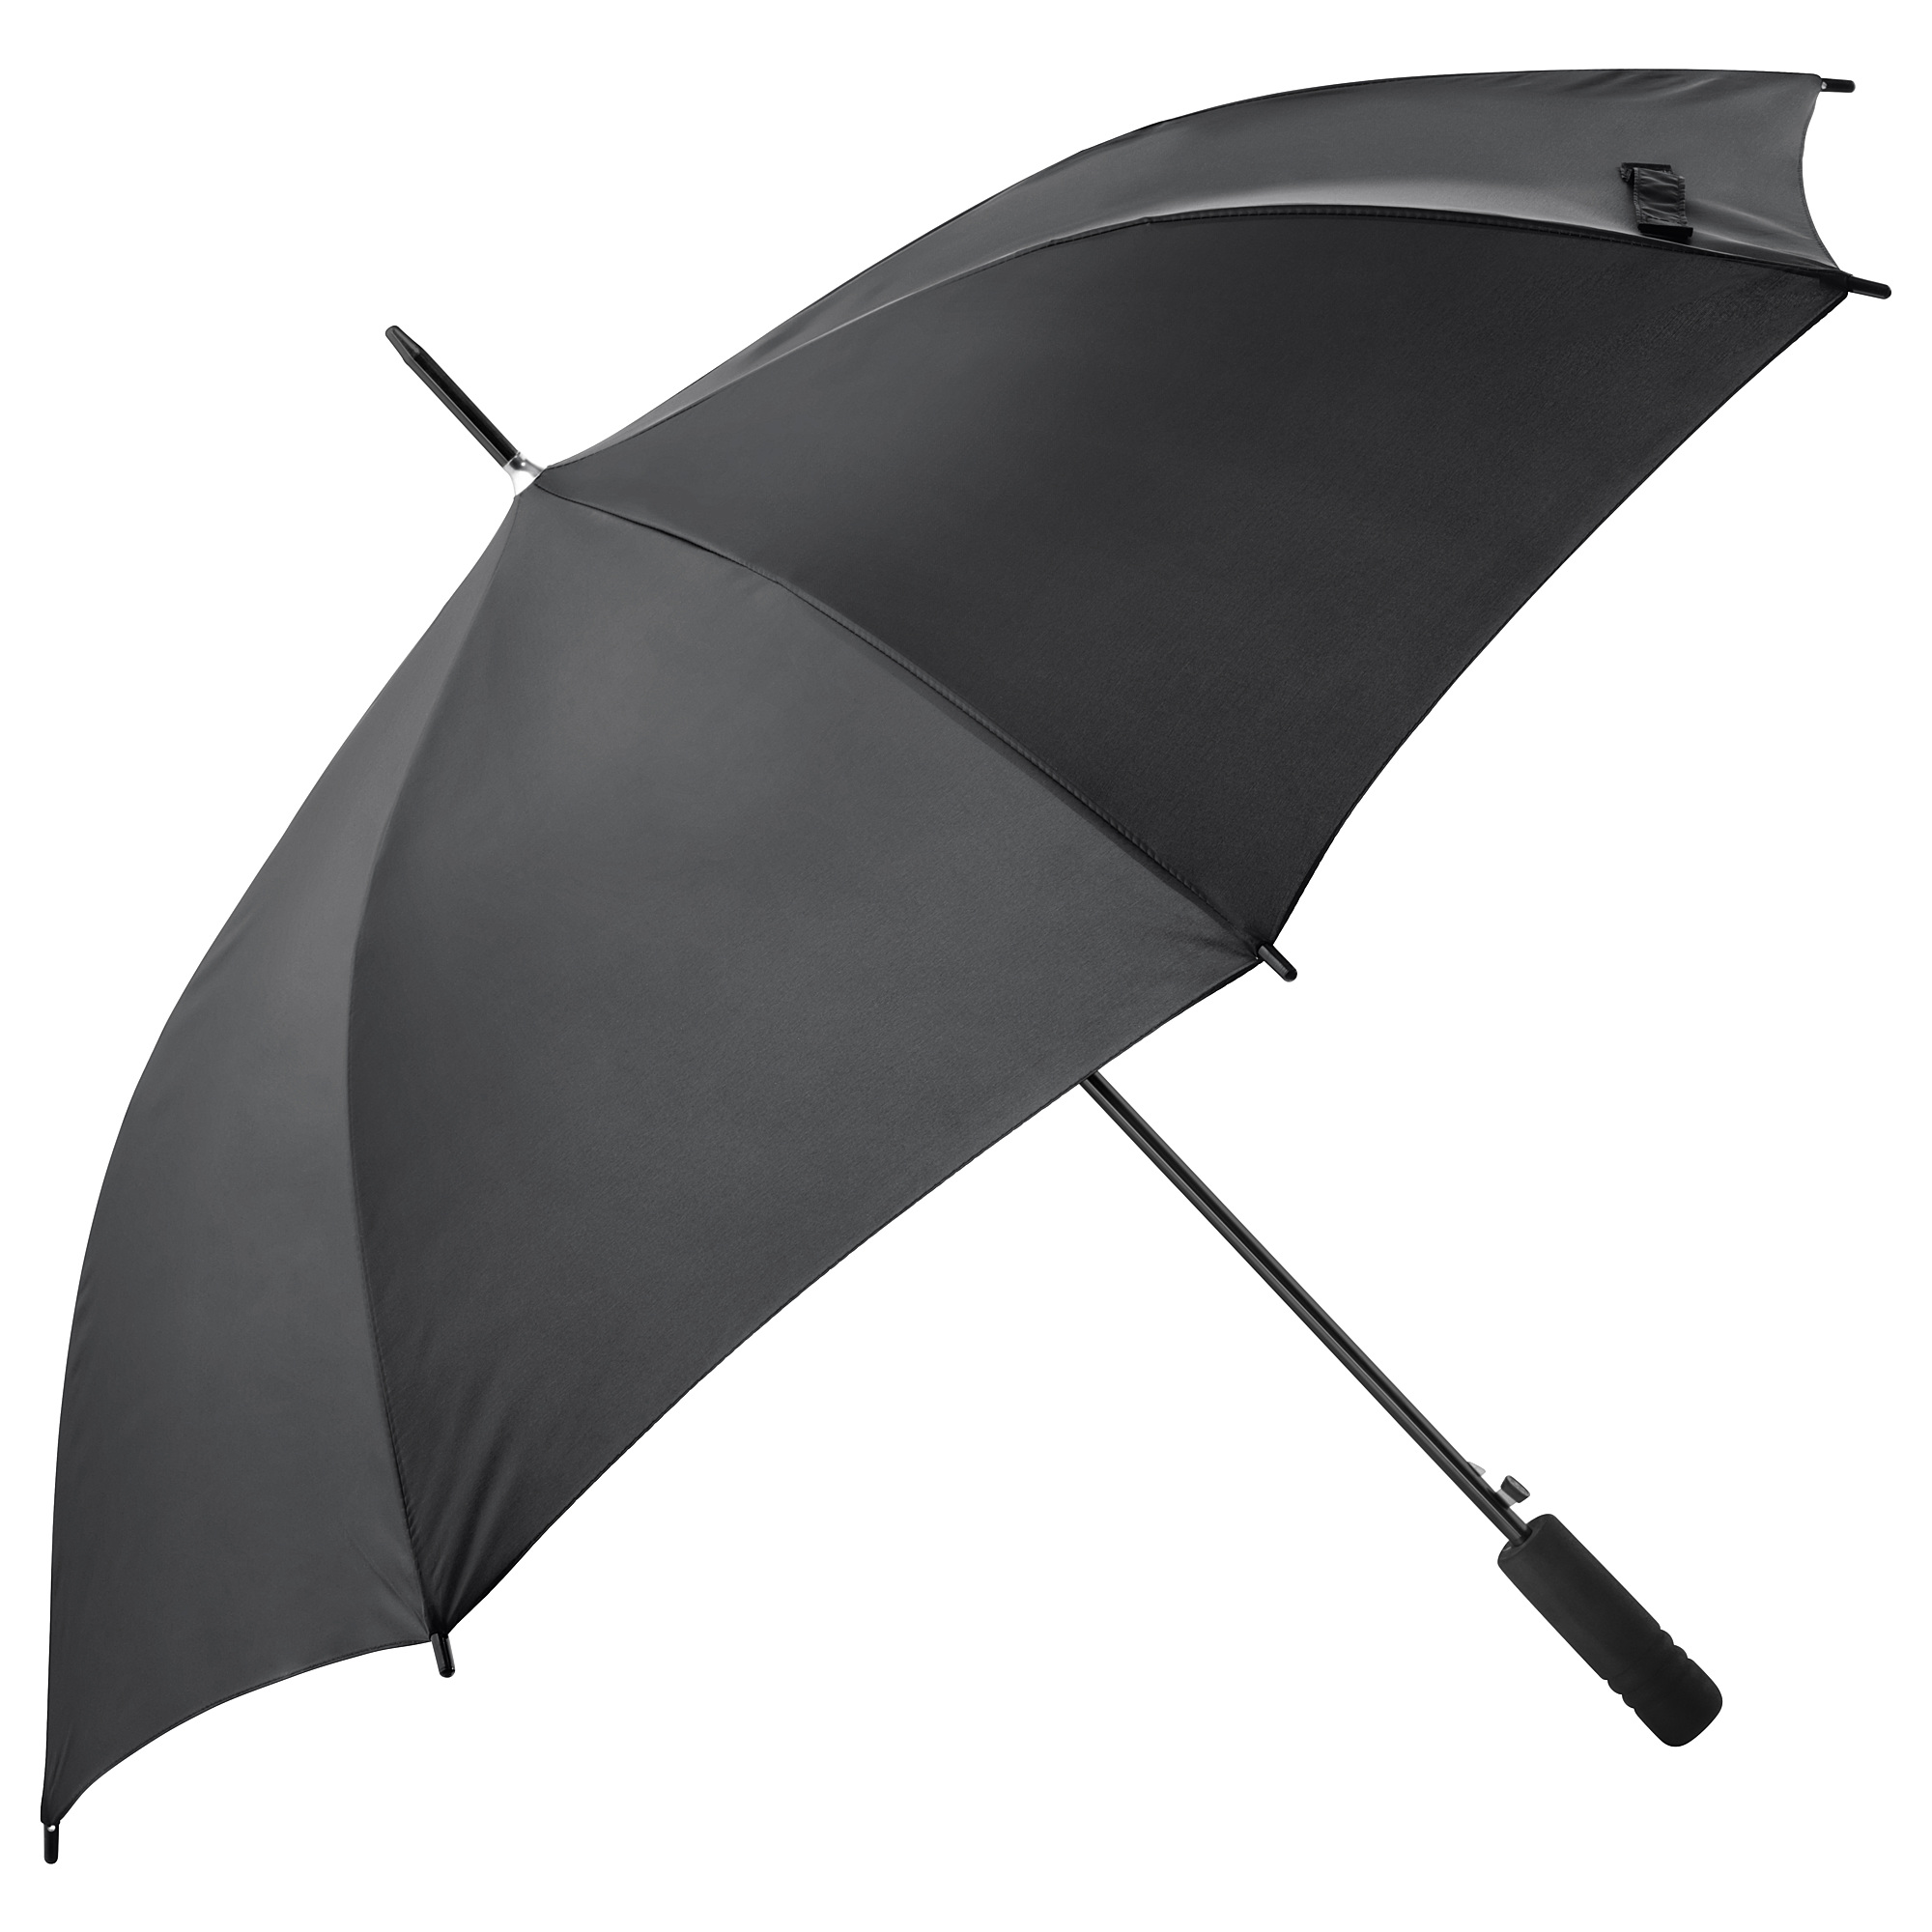 KNALLA - 雨傘, 80x80x Ø105 cm, 黑色| IKEA 香港及澳門